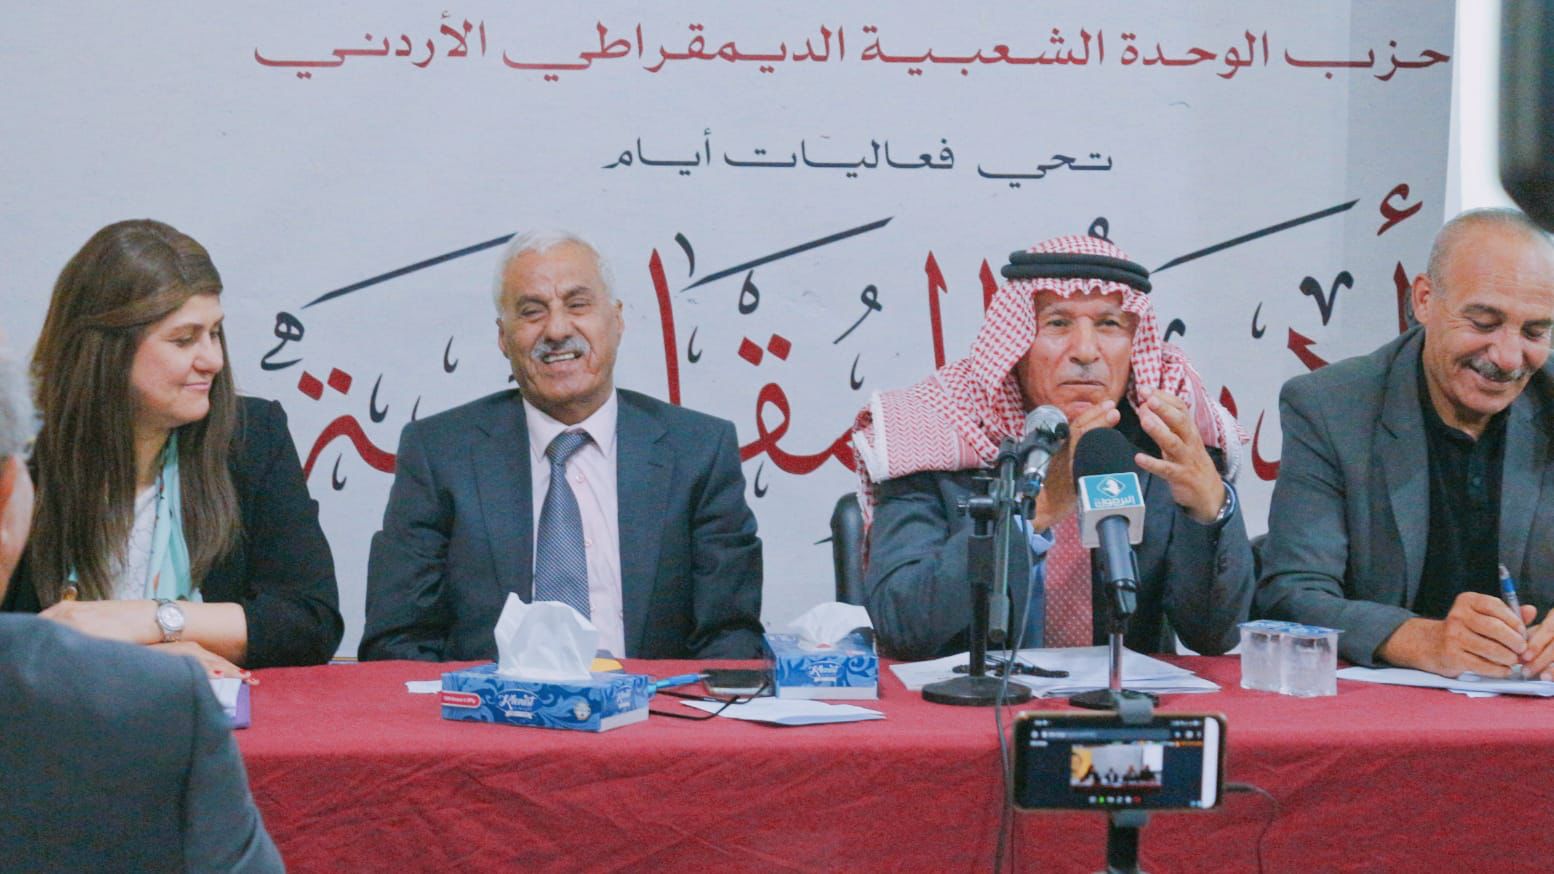 ندوة في الأردن تدعو لدعم المقاومة في فلسطين ورفض تجريمها